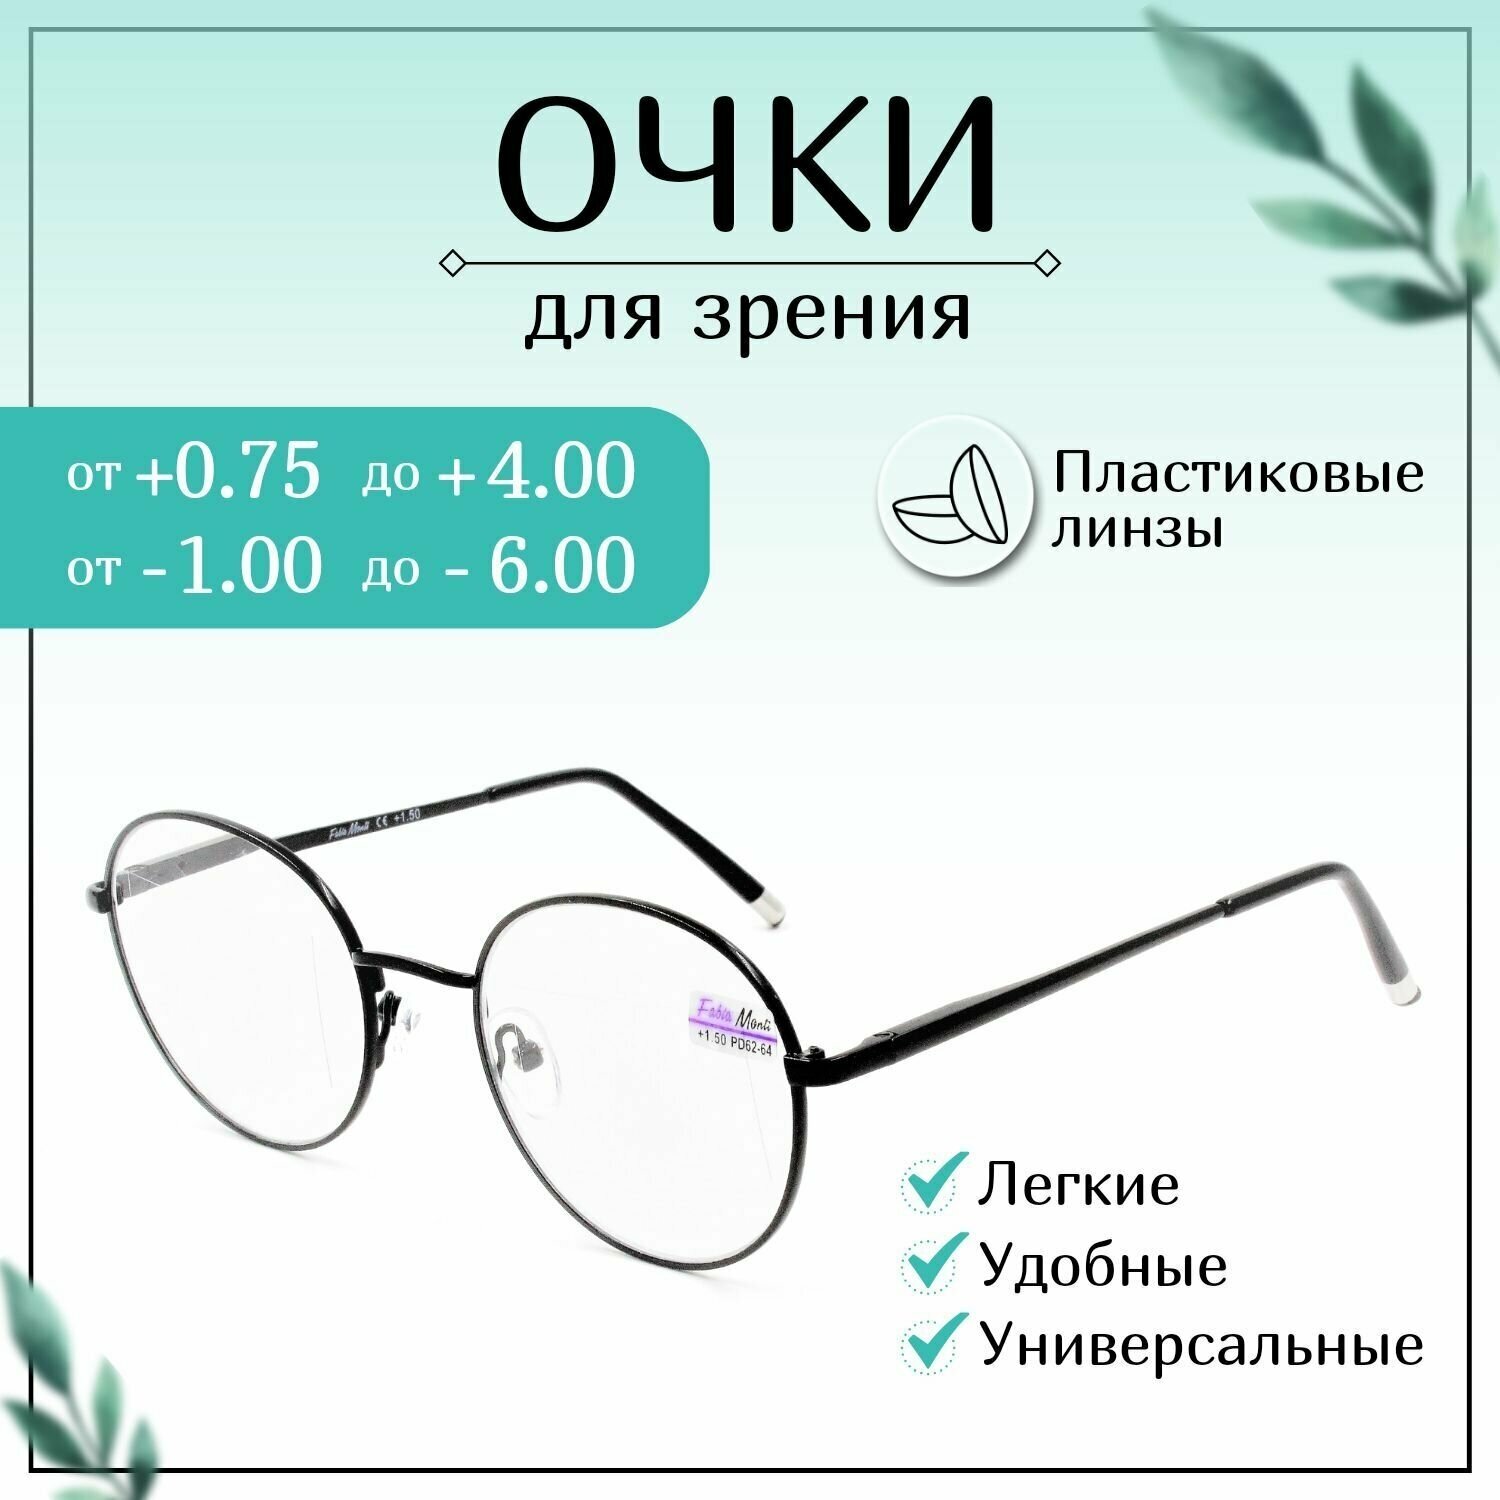 Готовые очки для зрения с диоптриями -4,00, FABIA MONTI готовые, женские, мужские корригирующие